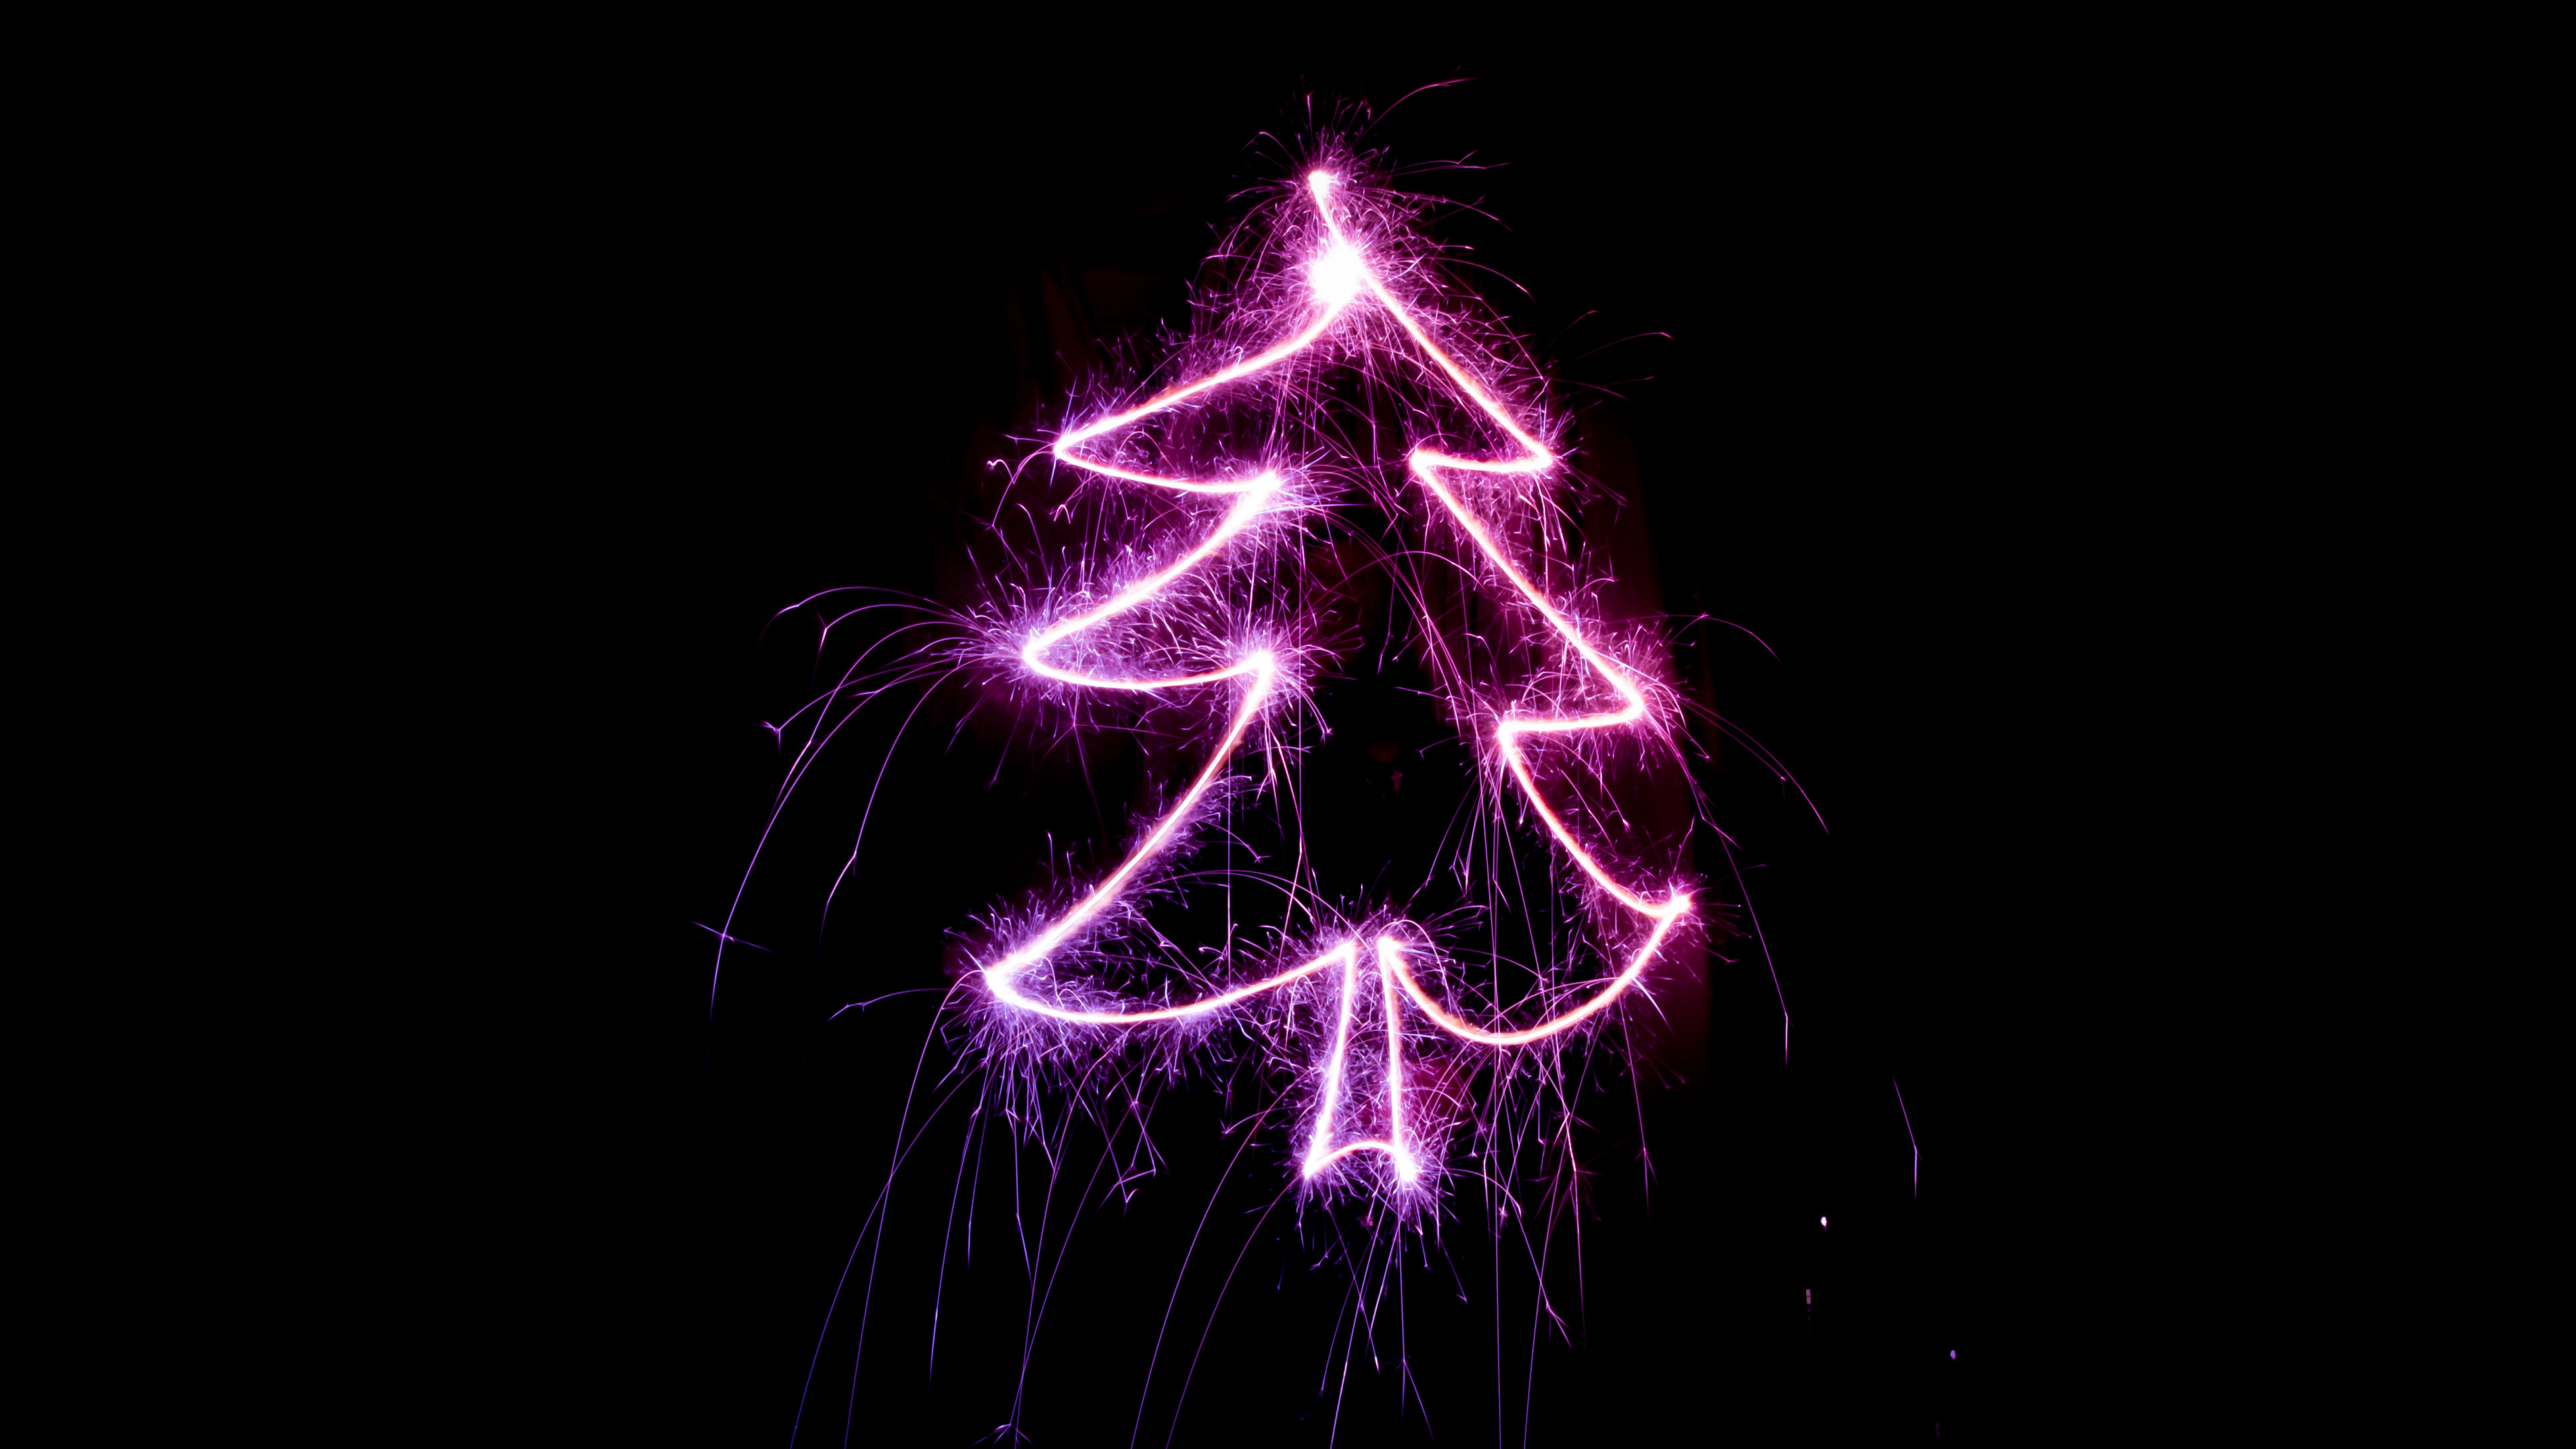 Weihnachten, Weihnachtsbaum, Purpur, Veilchen, Licht. Wallpaper in 3840x2160 Resolution